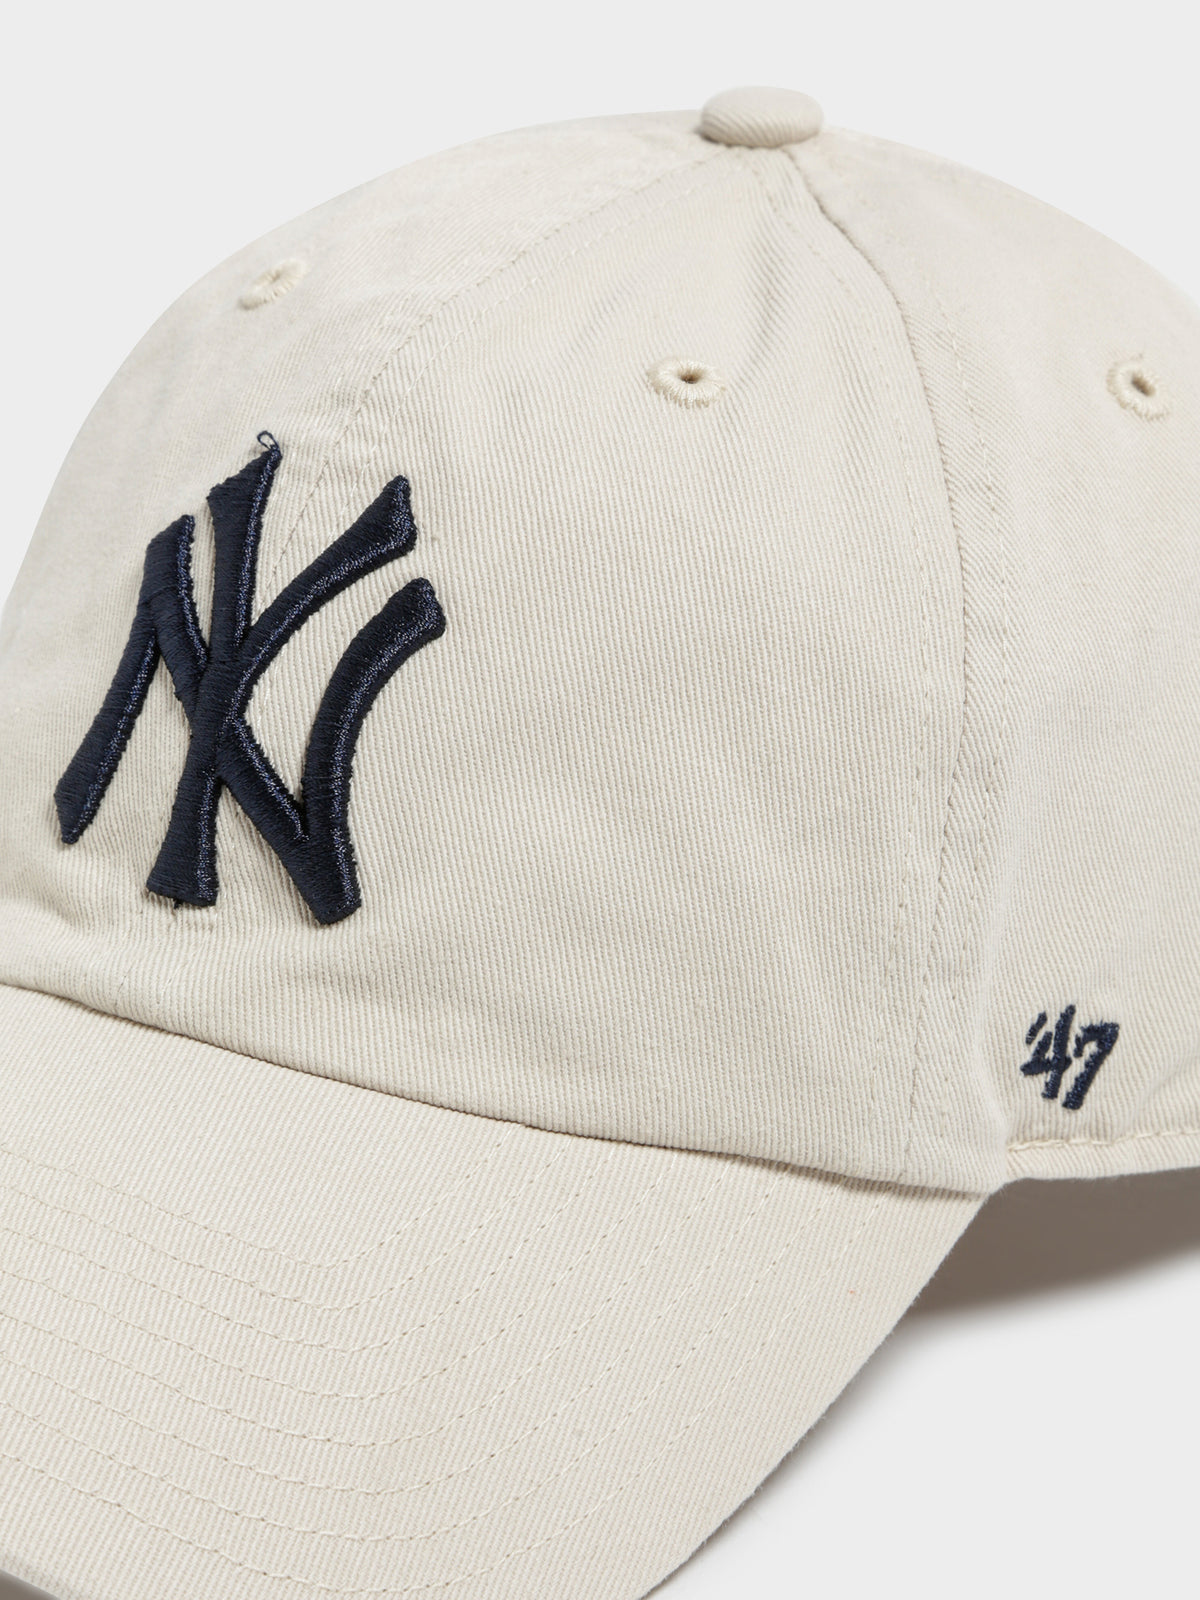 Clean Up New York Yankees Cap in Bone